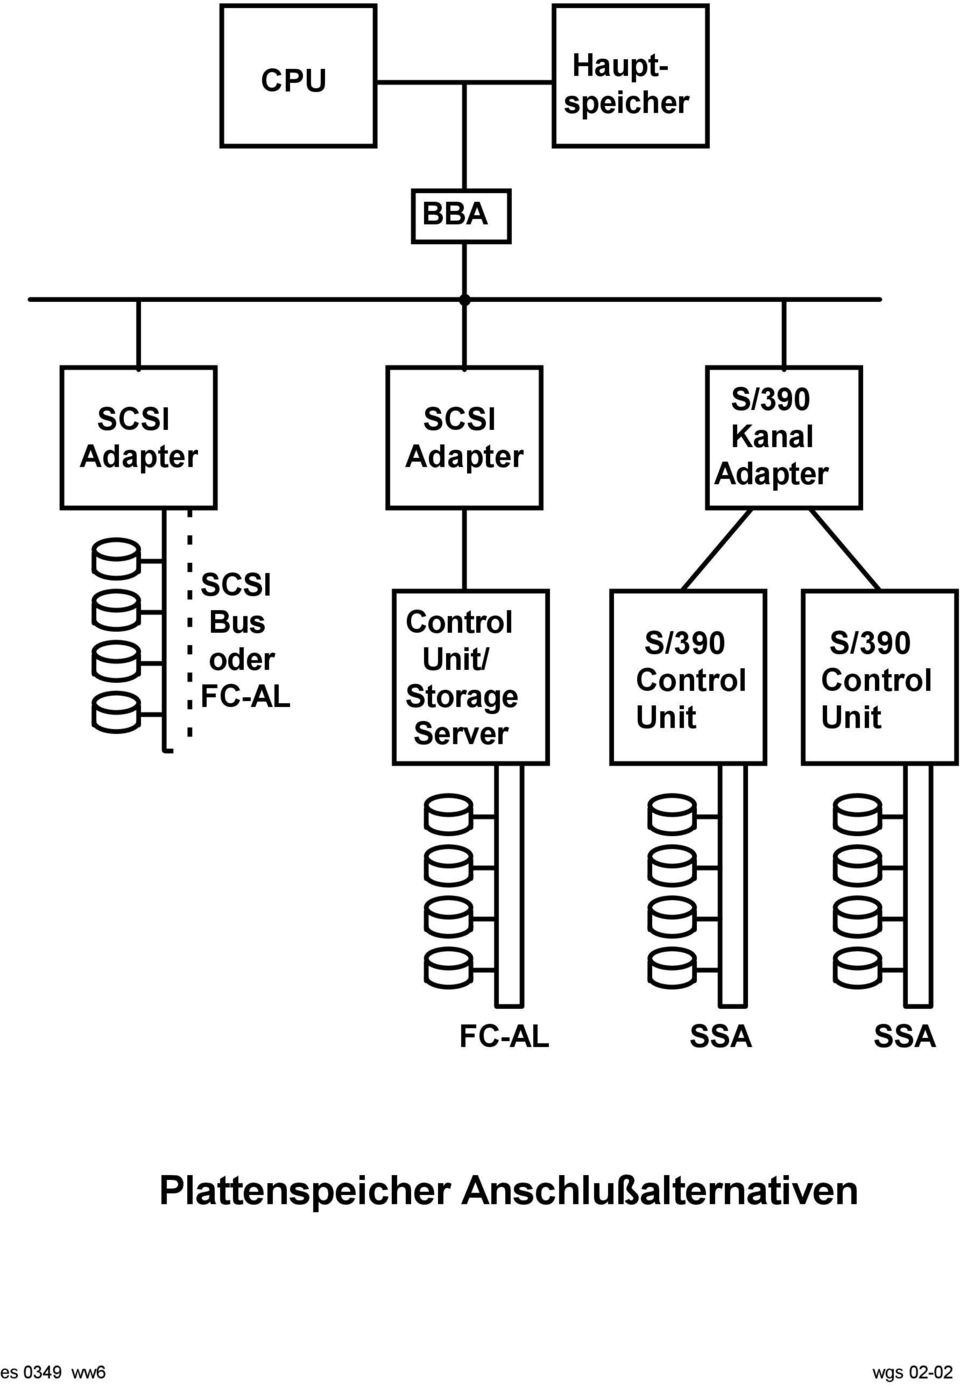 Server S/390 Control Unit S/390 Control Unit FC-AL SSA